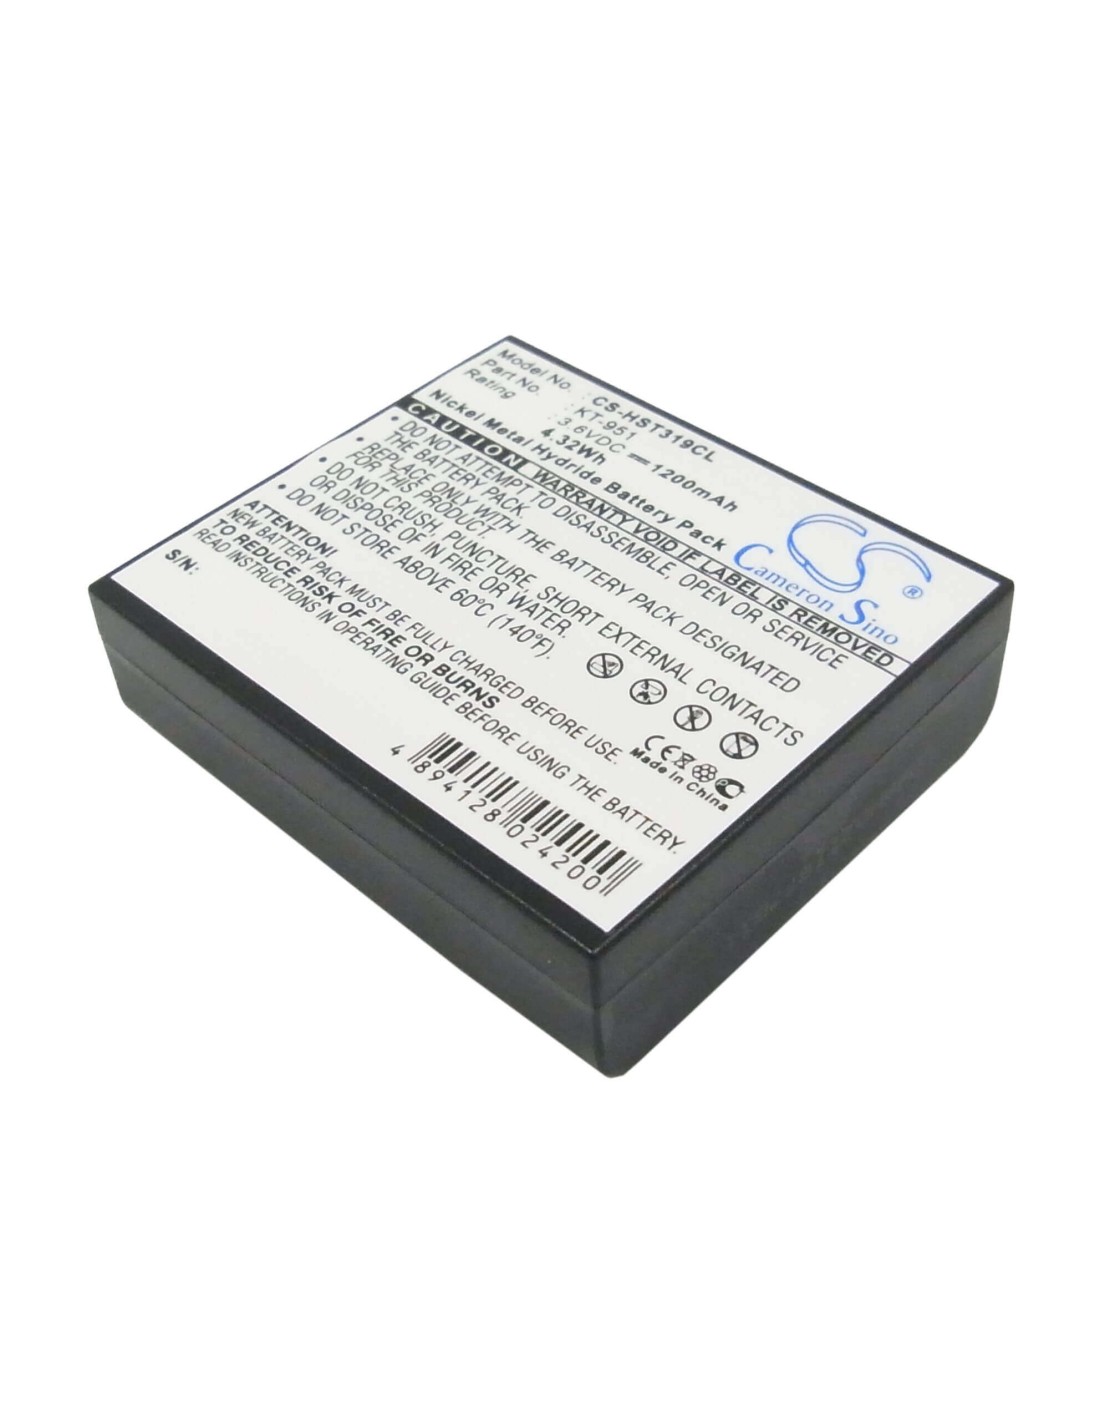 Battery for Kathrein, Kt951 3.6V, 1200mAh - 4.32Wh